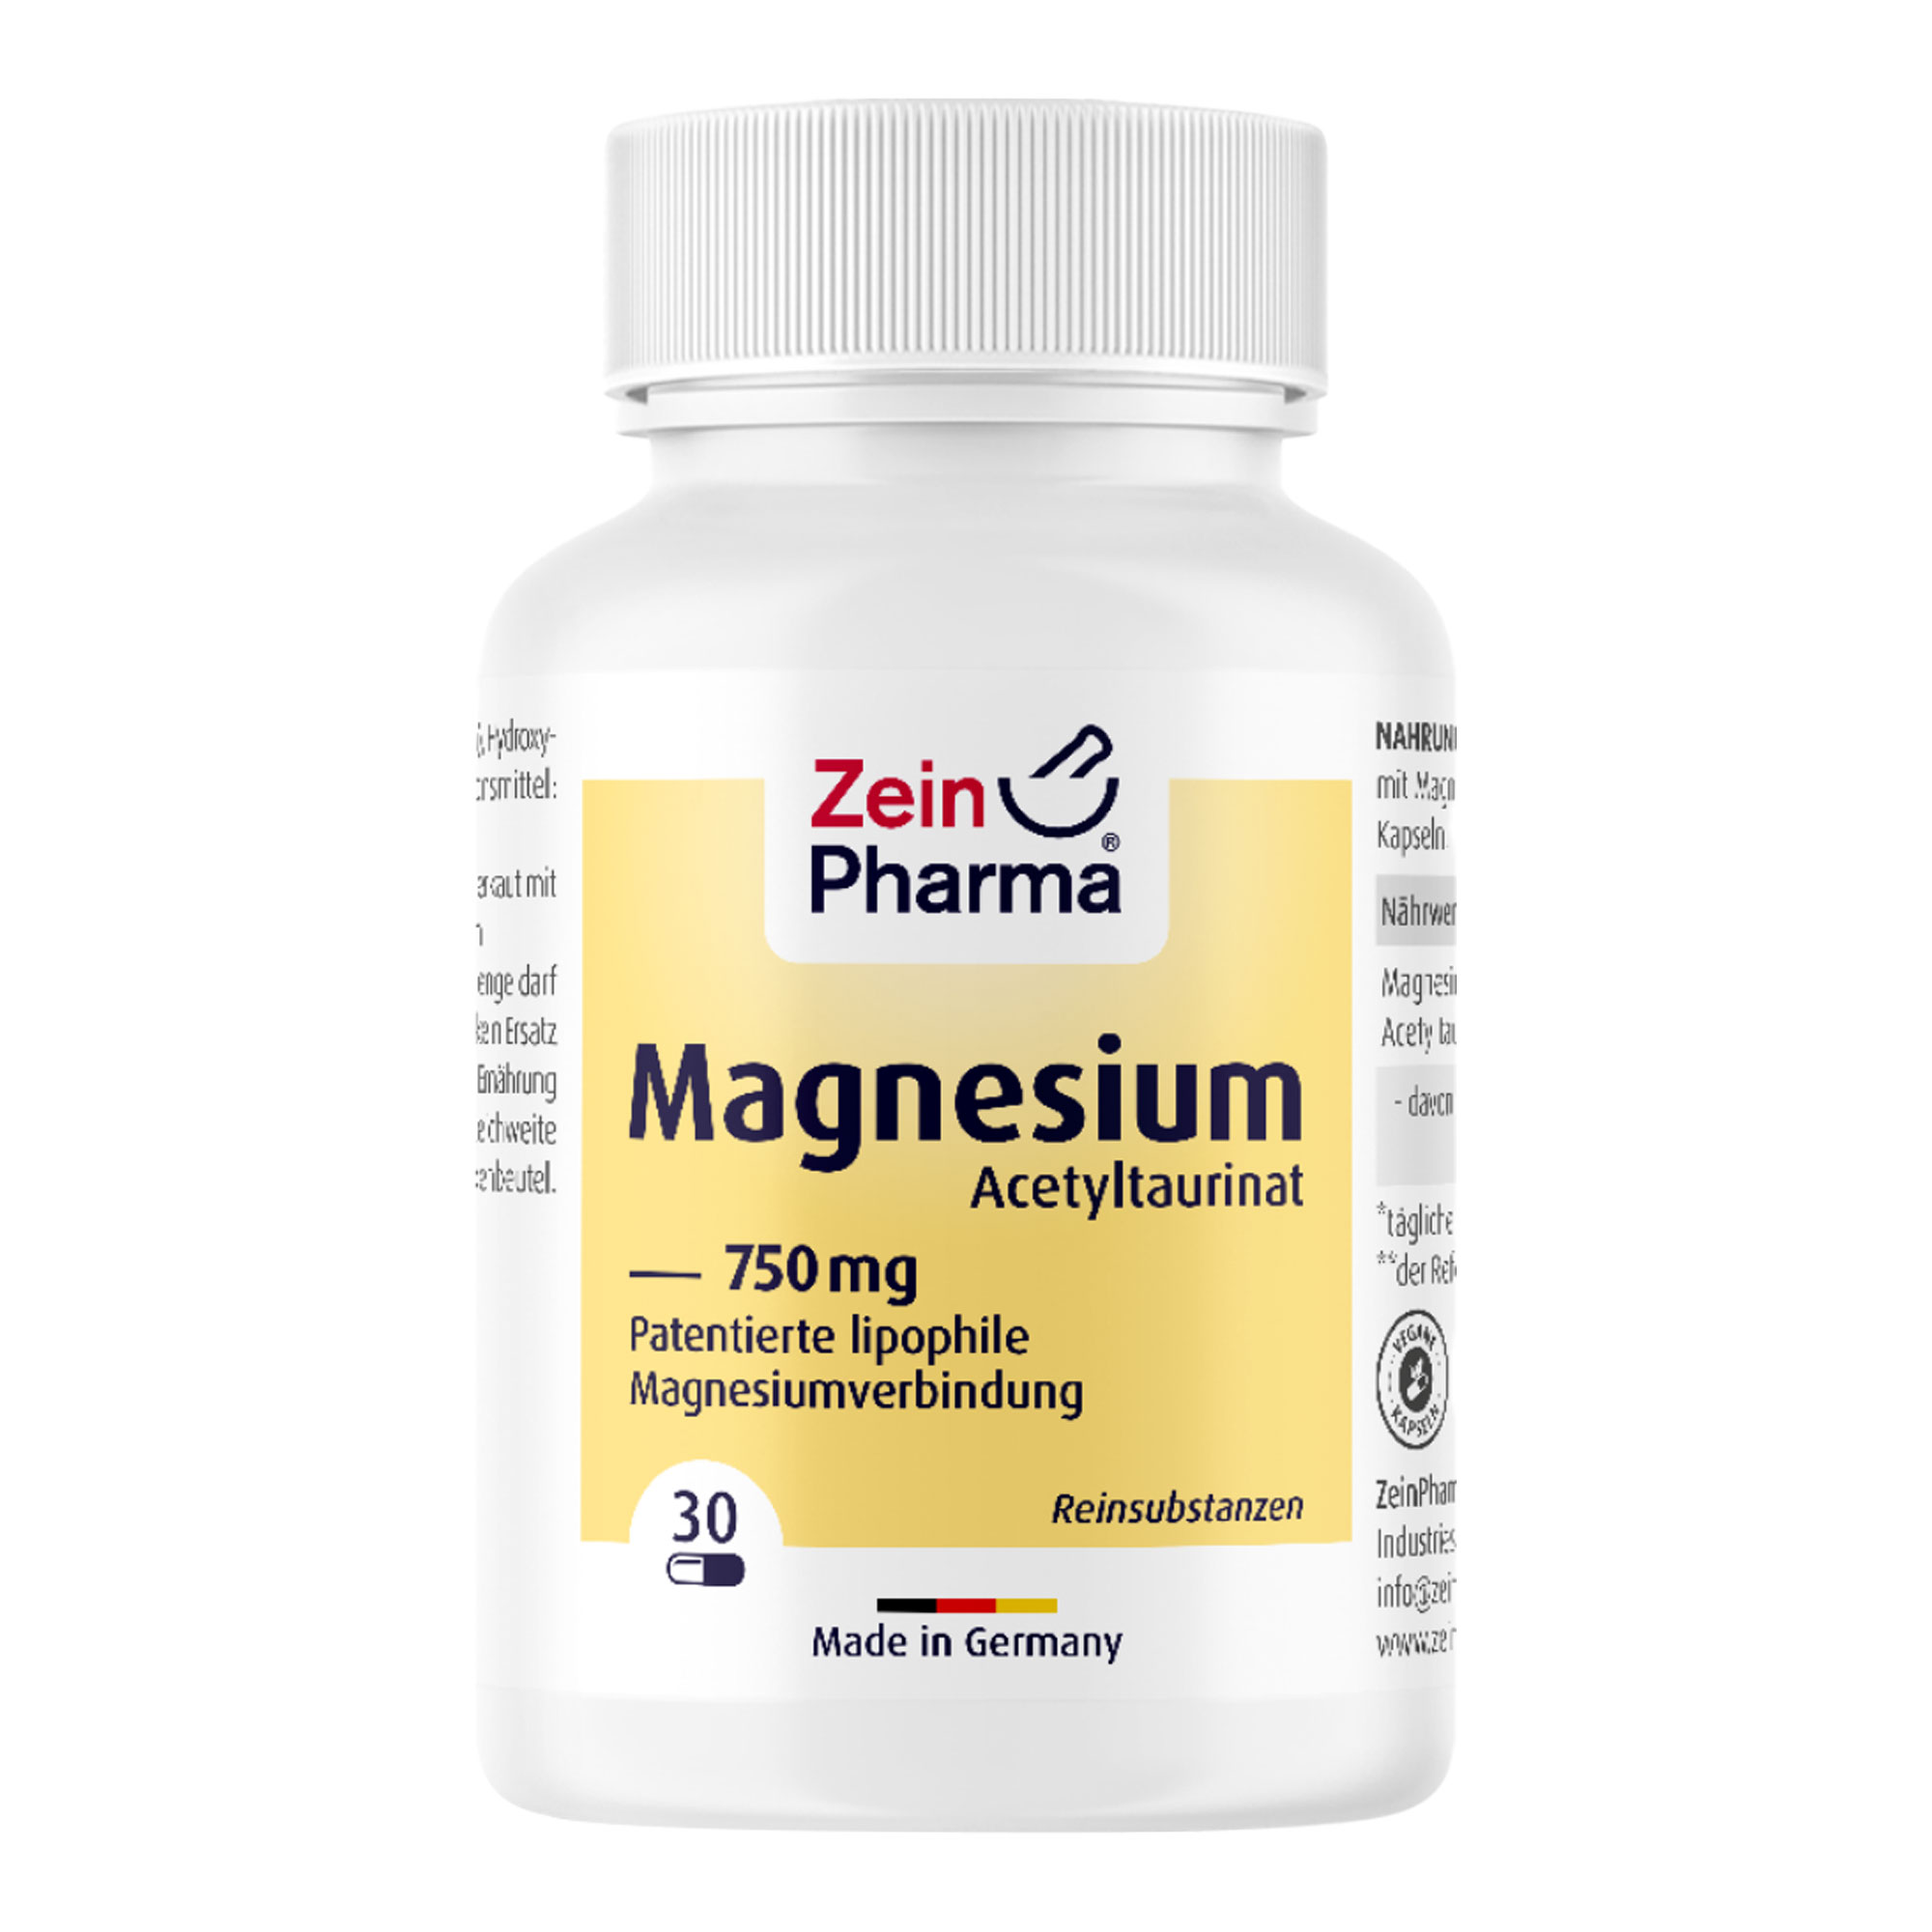 Nahrungsergänzungsmittel mit Magnesium Acetyltaurinat in veganen Kapseln.